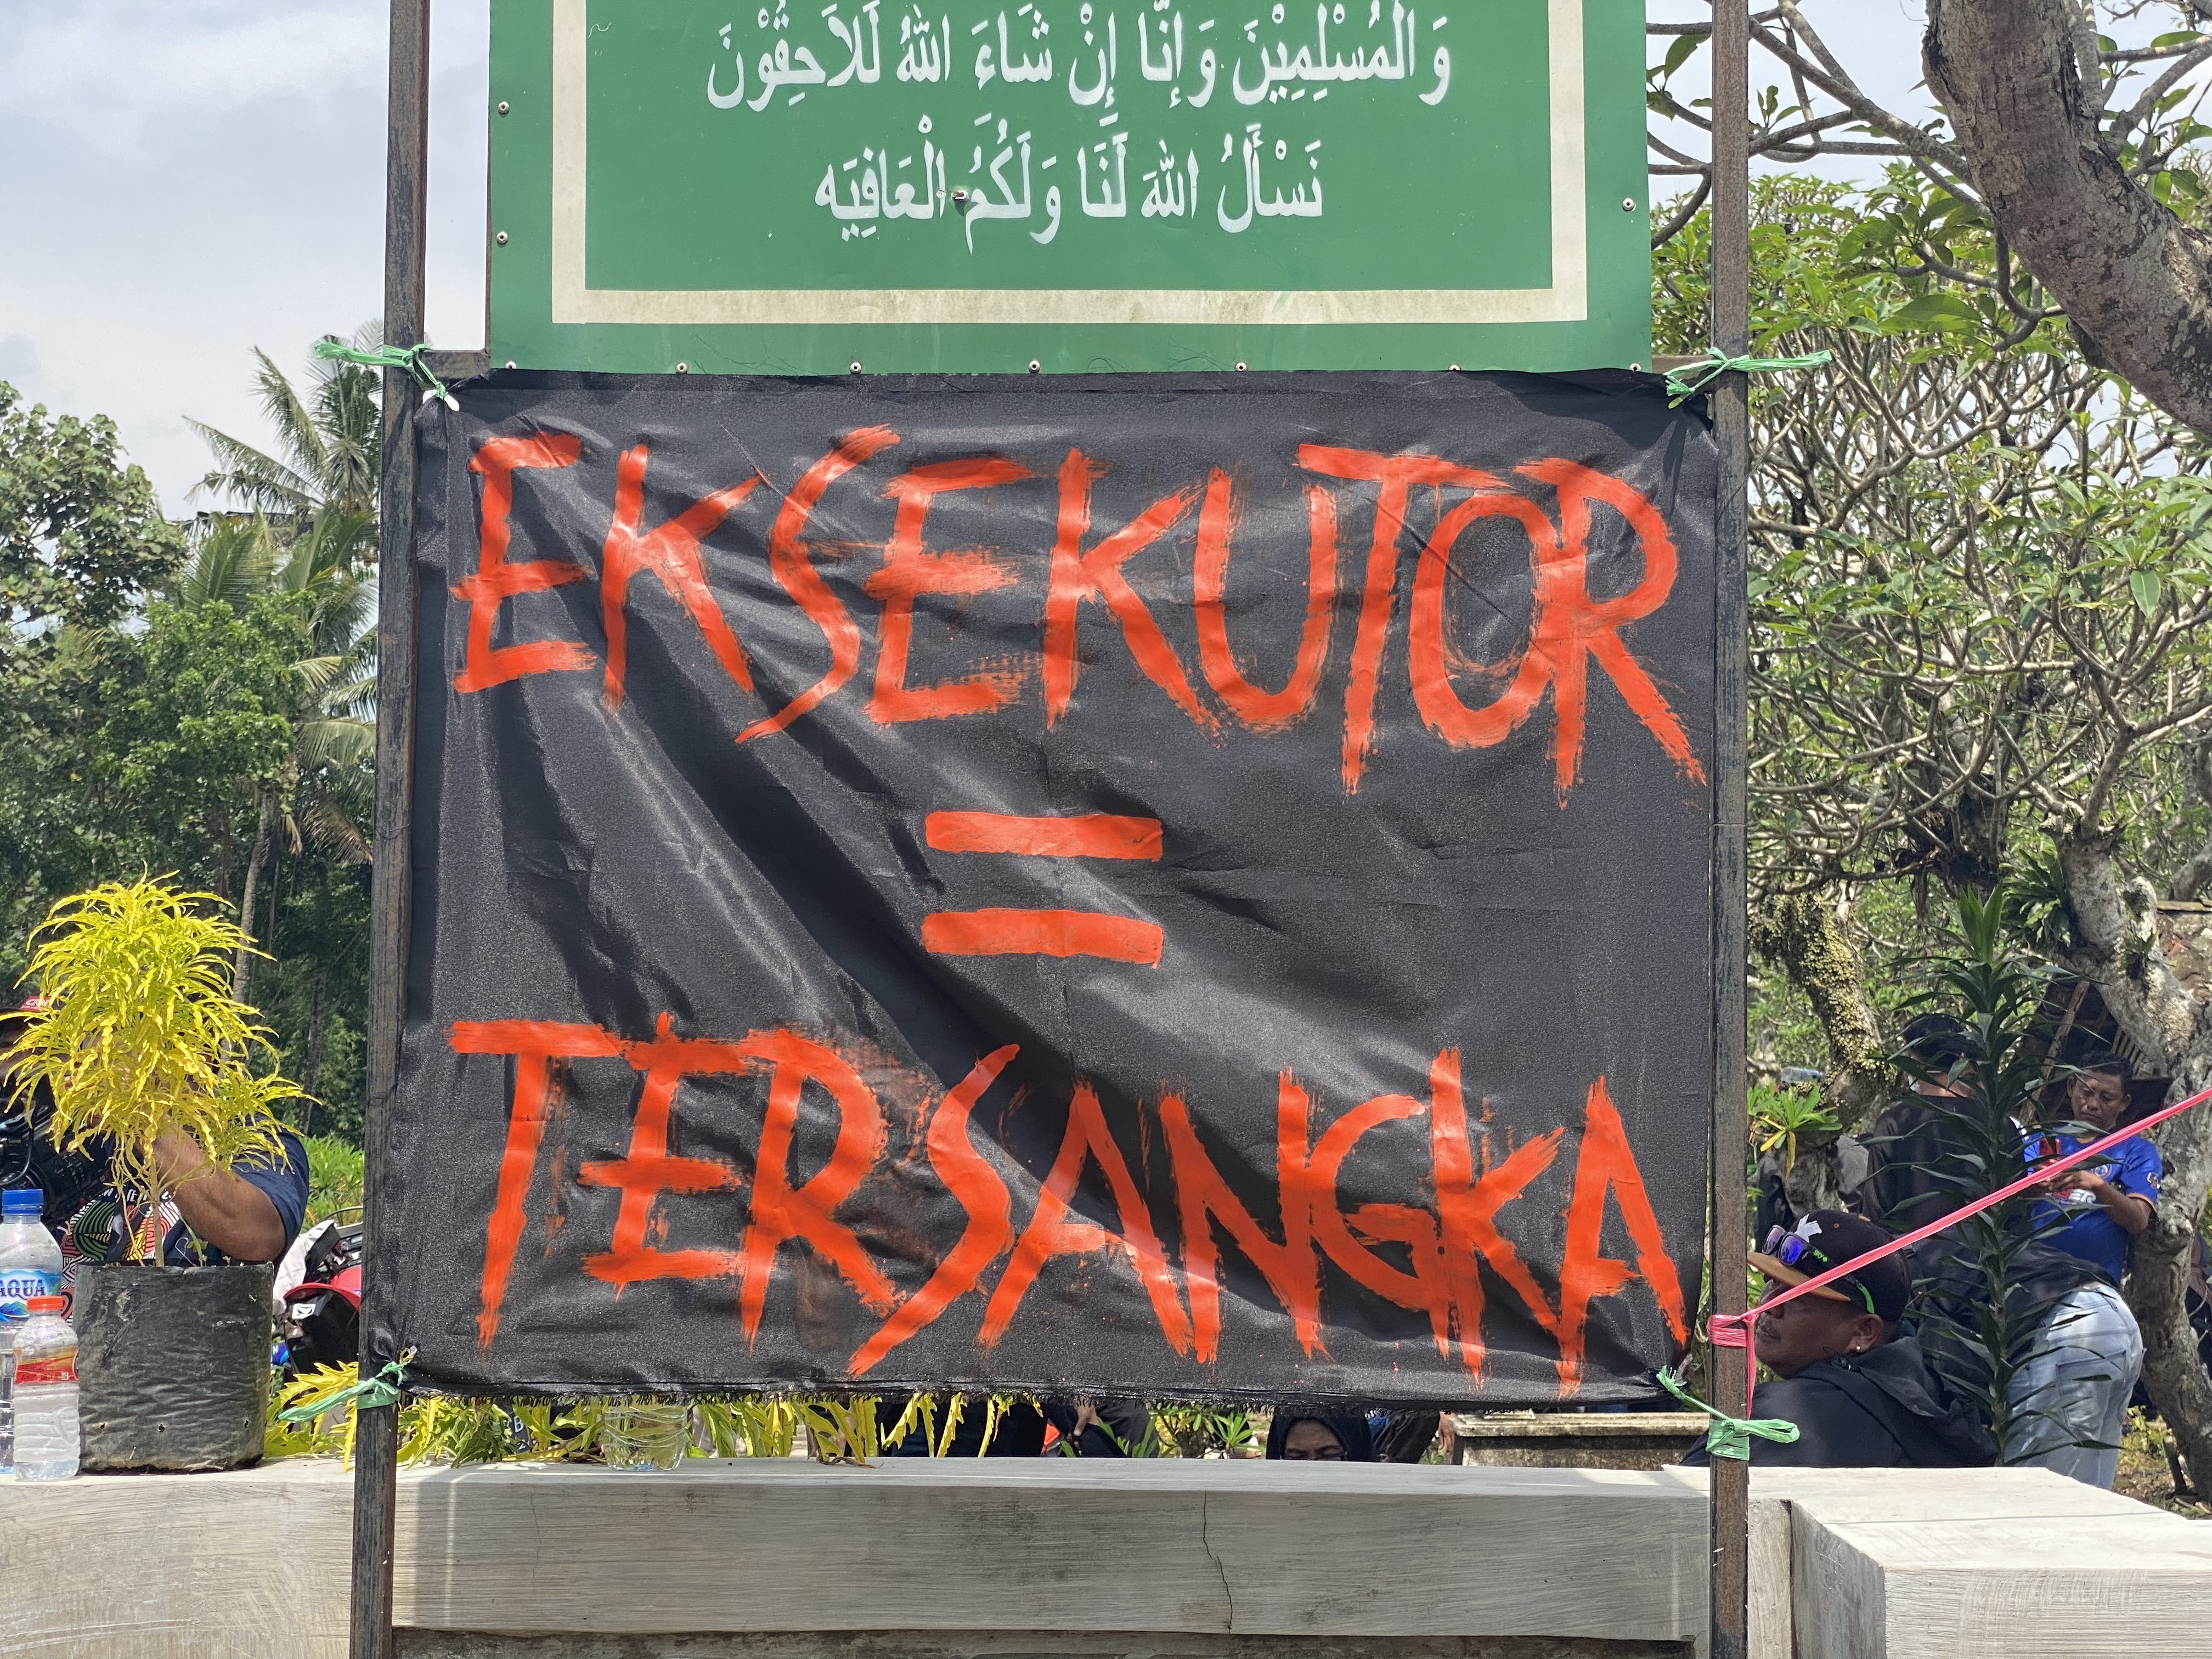 Poster bertuliskan “Executioner = Tersangka” terpasang di area pemakaman.